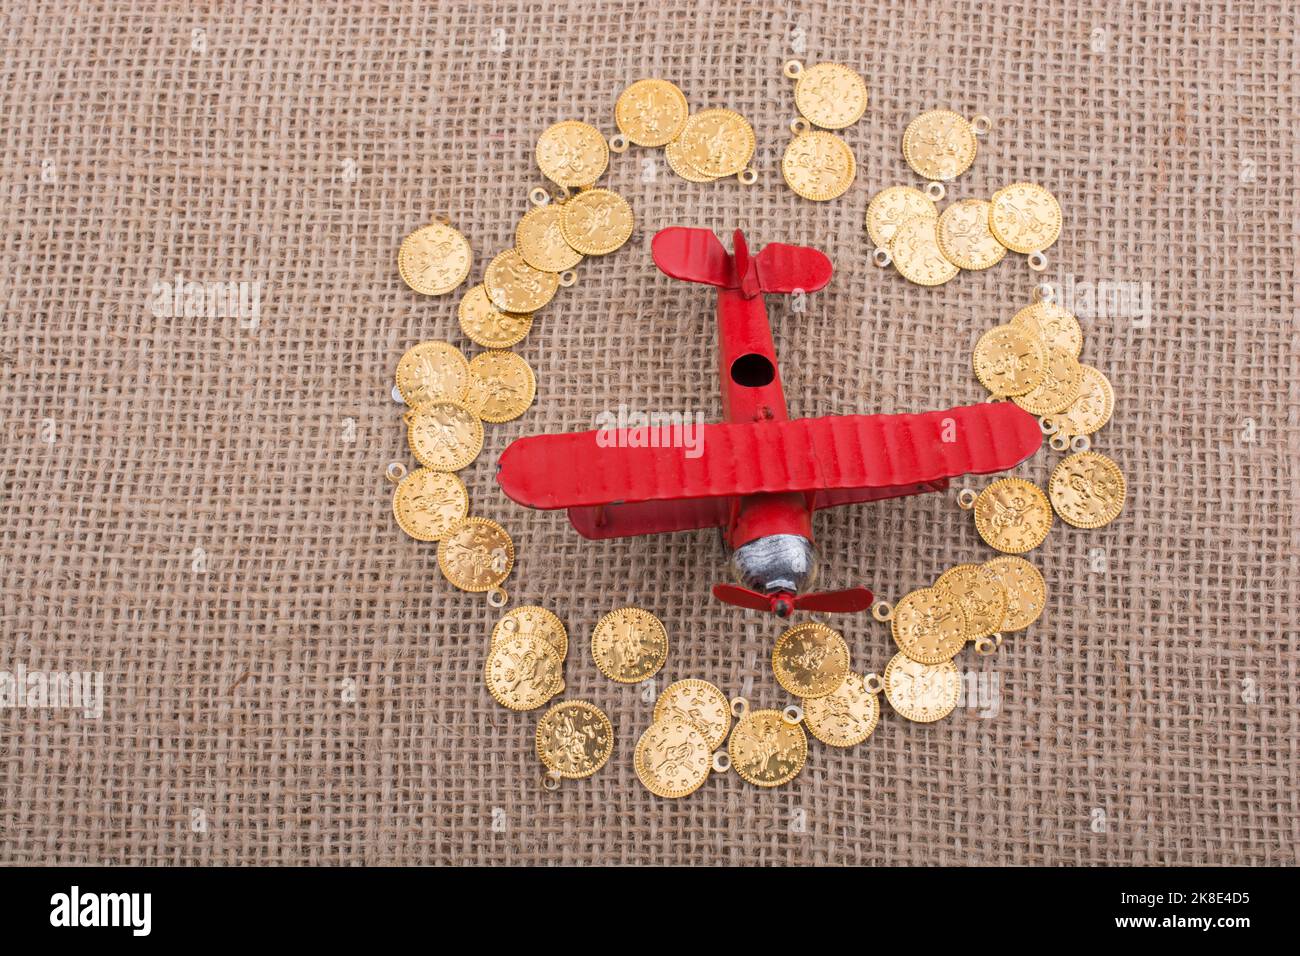 Fake gold coins around the retro model airplane Stock Photo